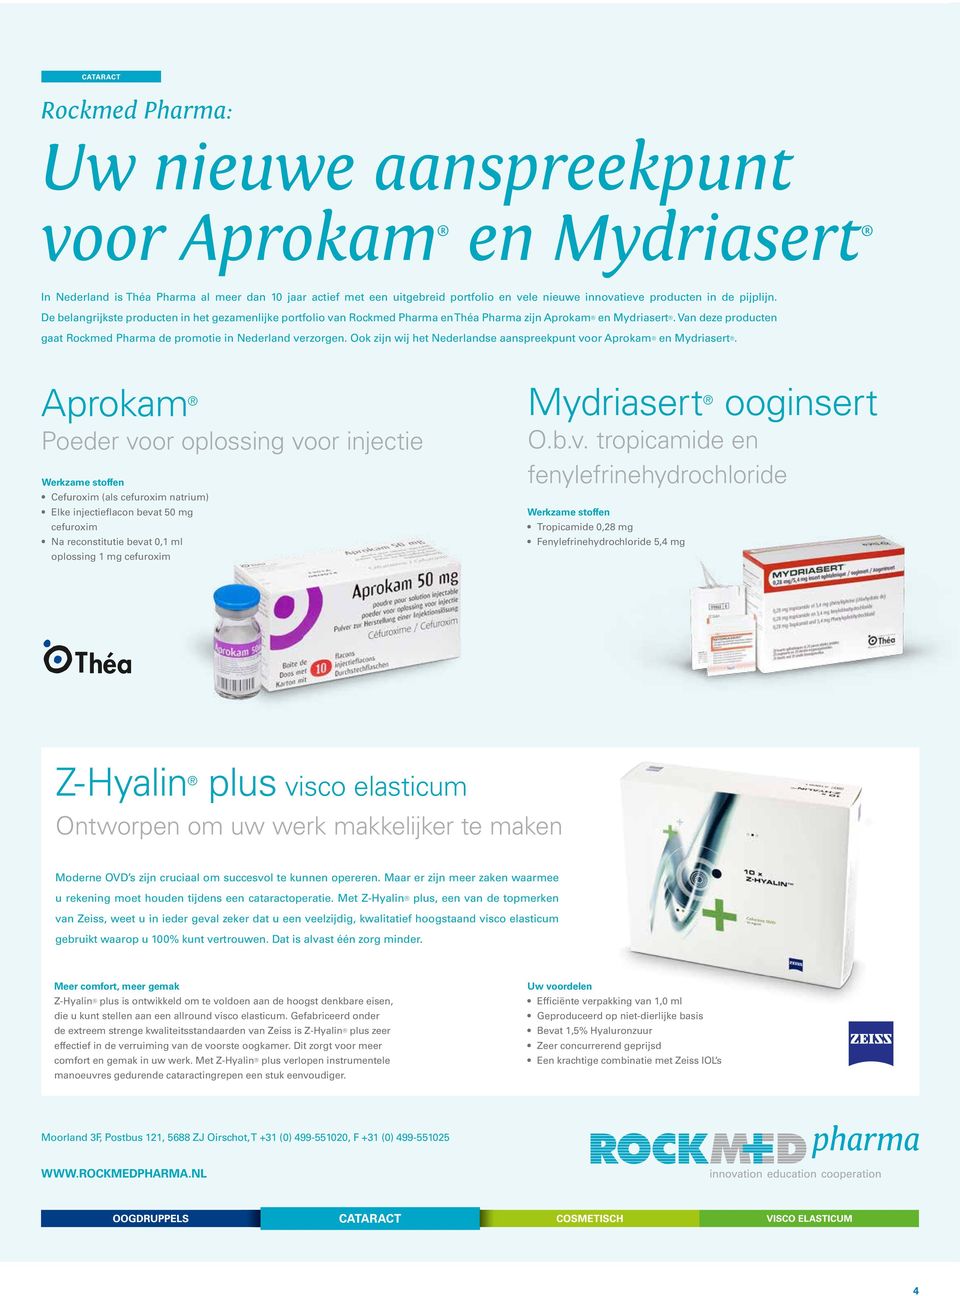 Van deze producten gaat Rockmed Pharma de promotie in Nederland verzorgen. Ook zijn wij het Nederlandse aanspreekpunt voor Aprokam en Mydriasert.